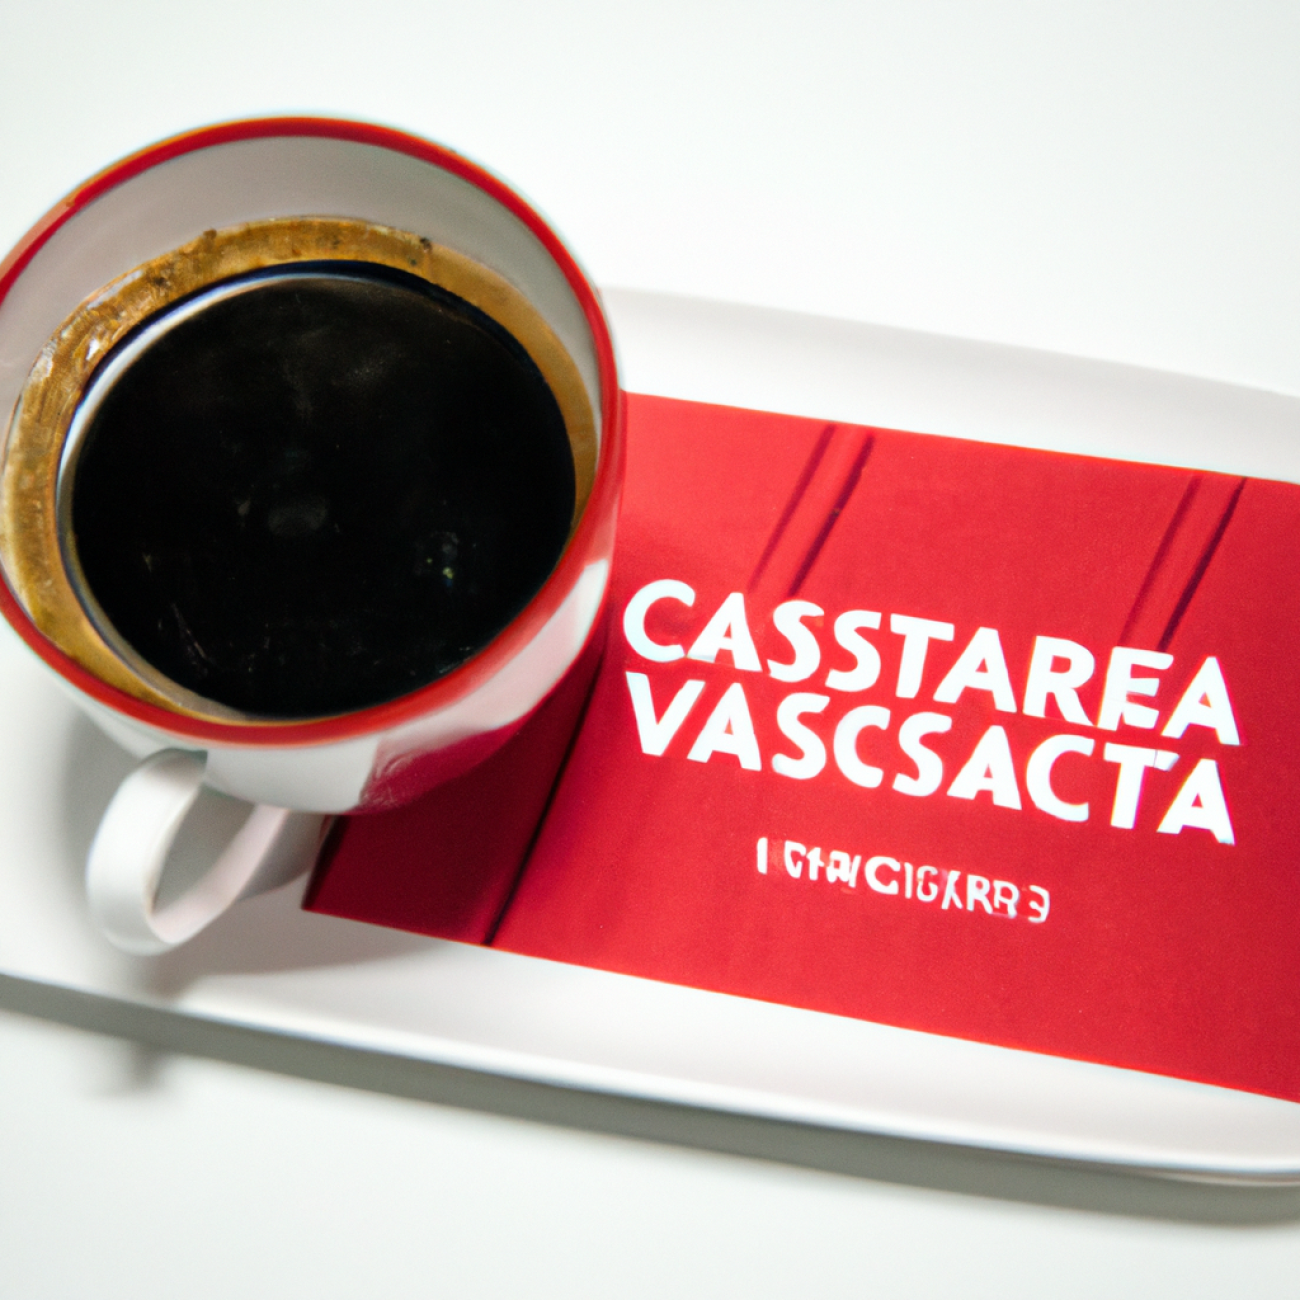 9. Café Neustadt: Útulná kavárna s vybranými regionálními pochoutkami